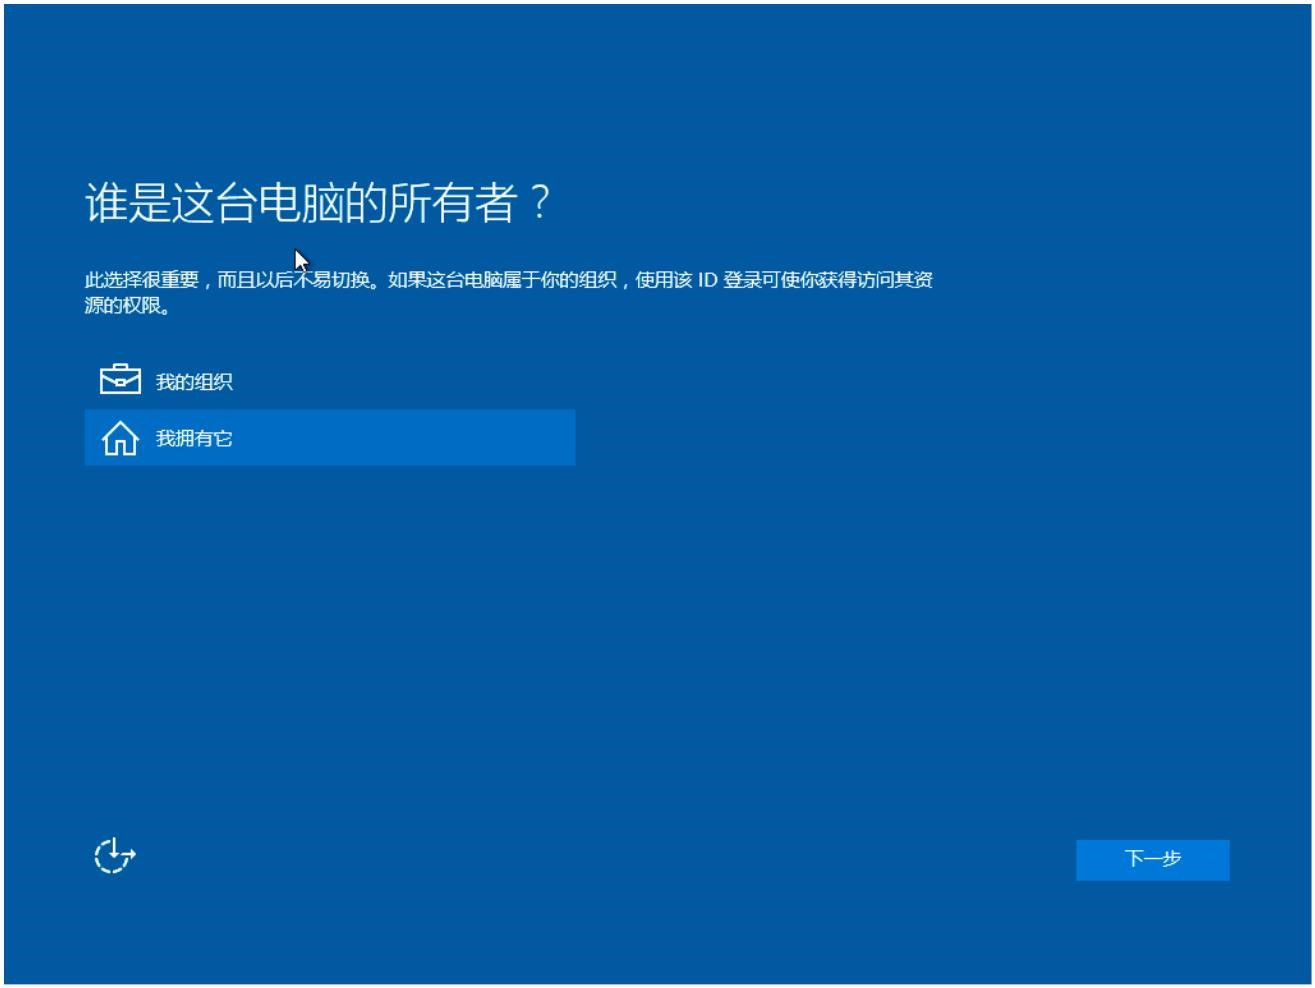 Windows10用户手册 - Windows 10 安装与激活 - 全新安装